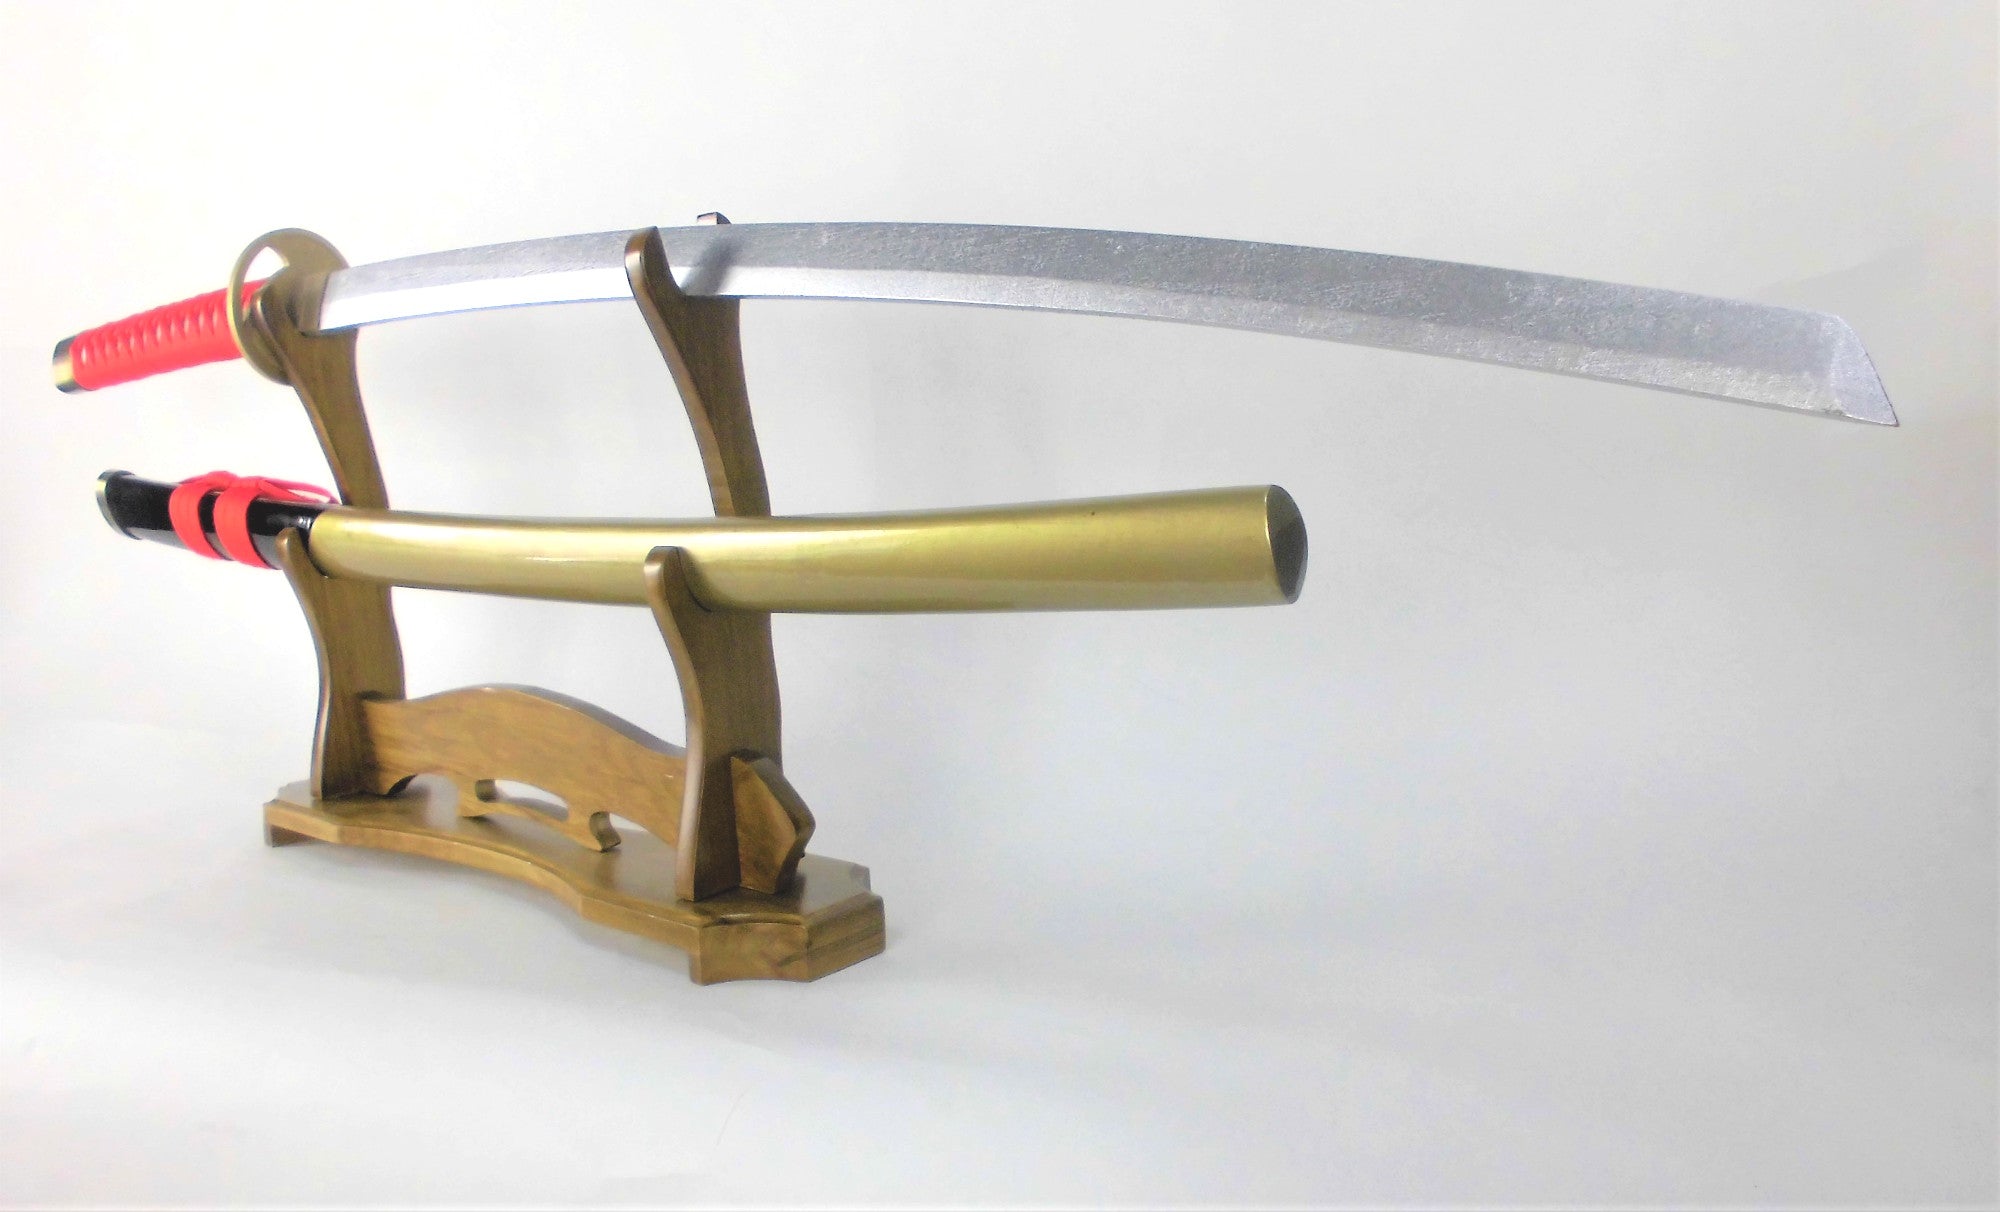 へし切長谷部 へしきりはせべ 日本刀 模造刀 武士刀 木製 木 コスプレ 